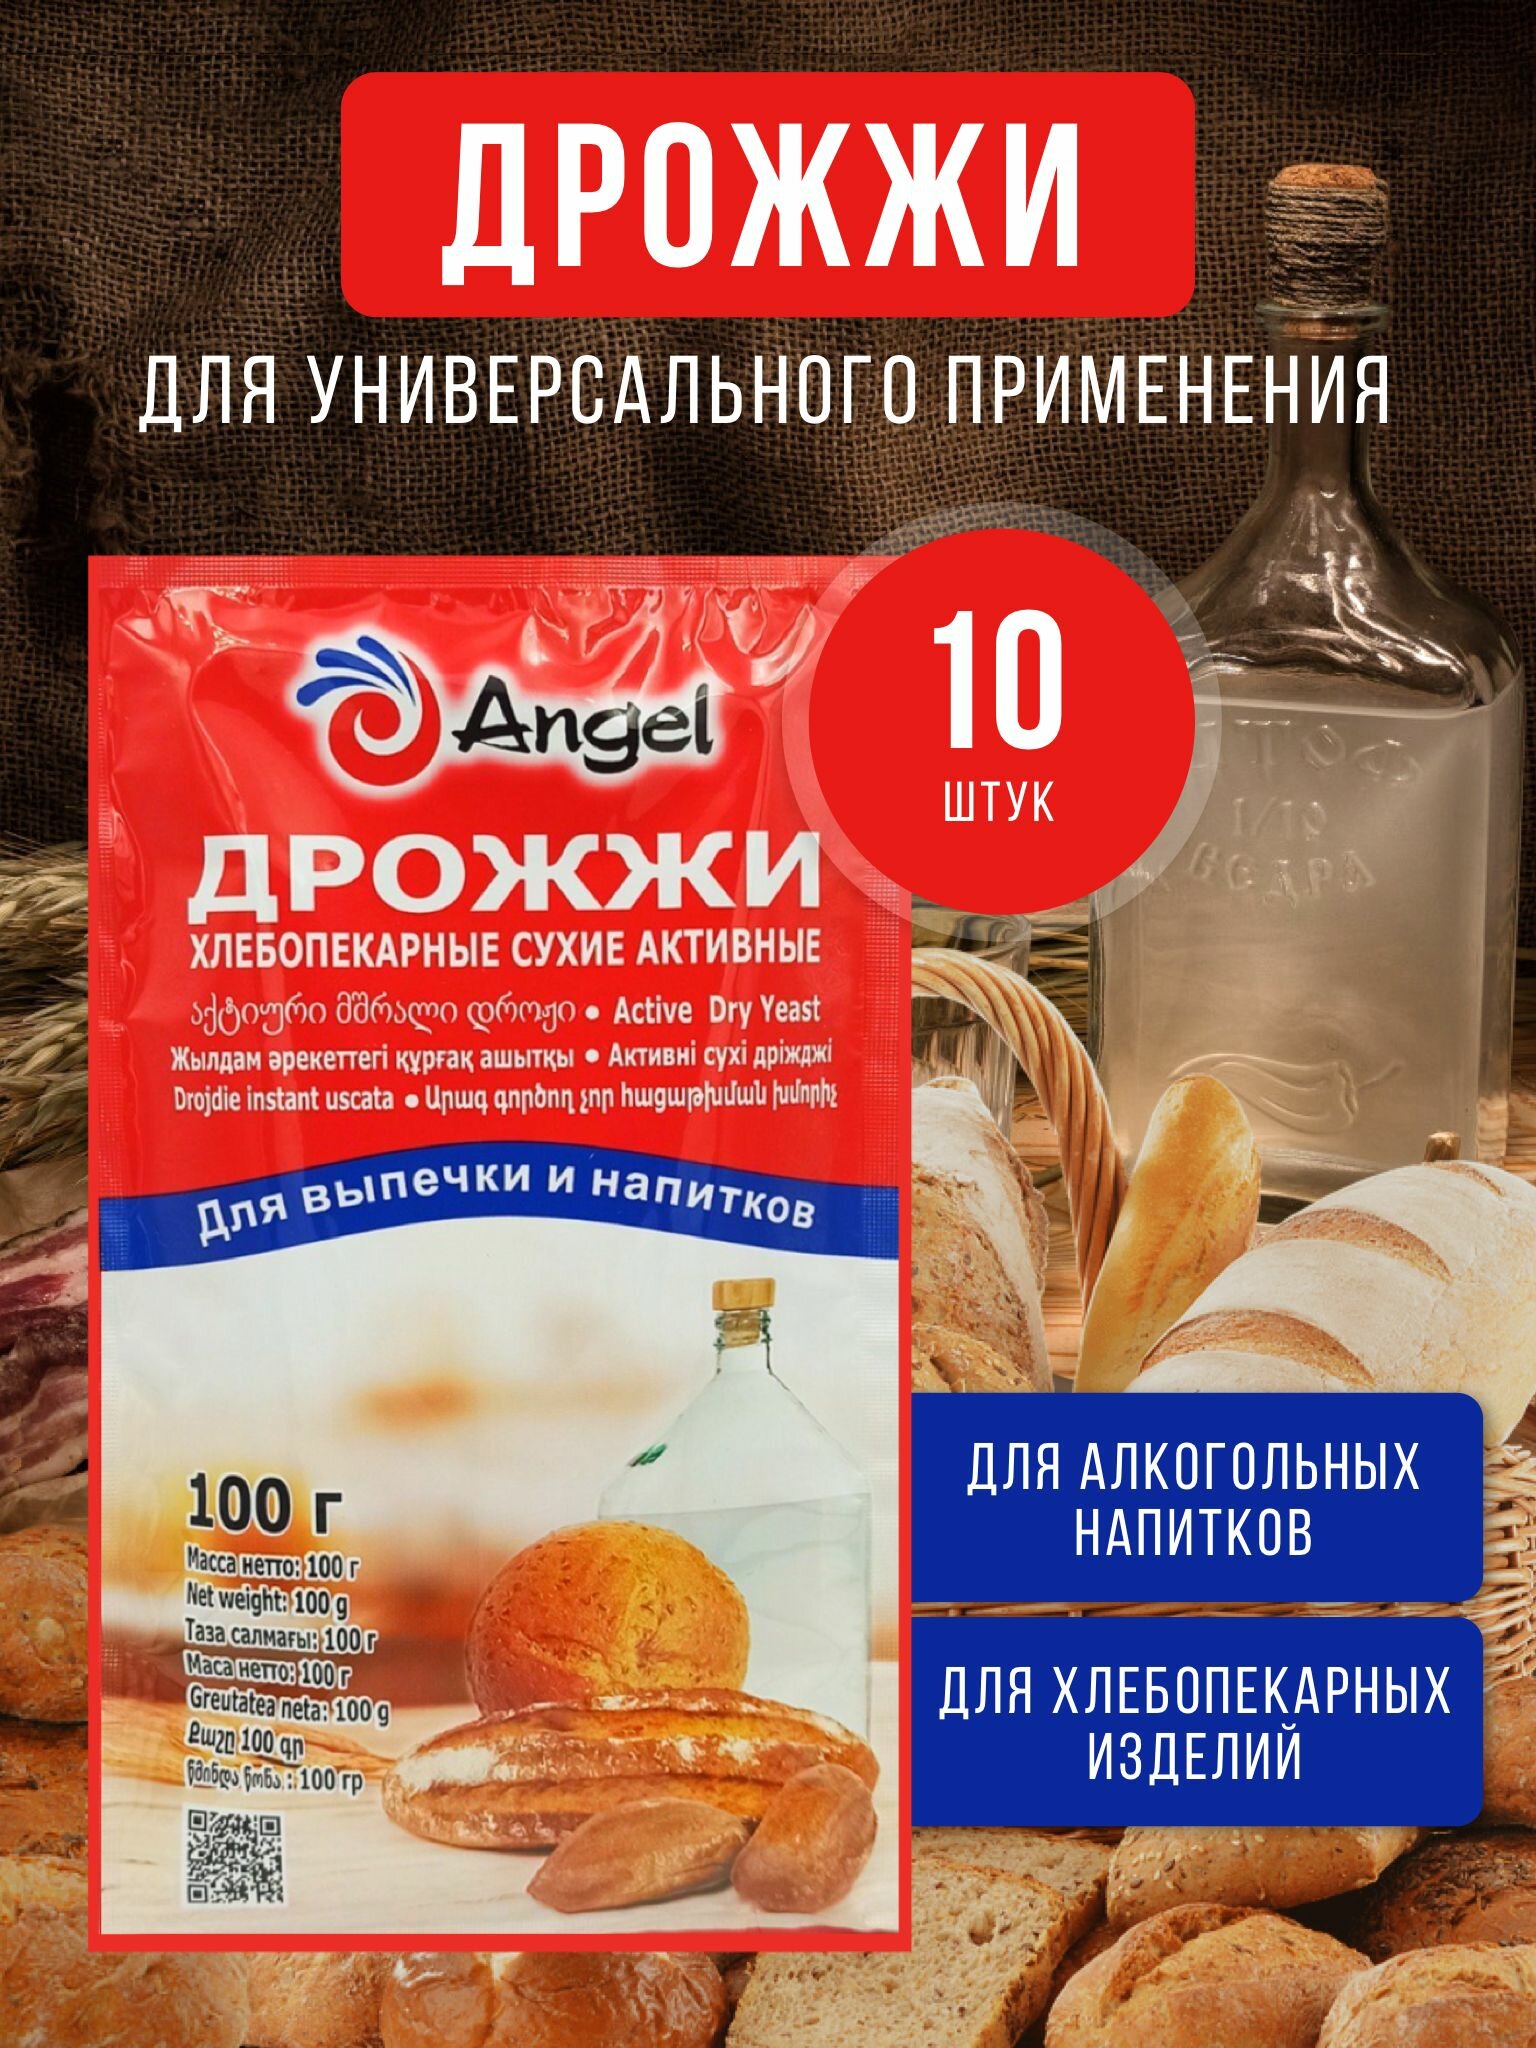 Дрожжи хлебопекарные сухие активные "Angel" 10 шт. для выпечки и спиртовых напитков